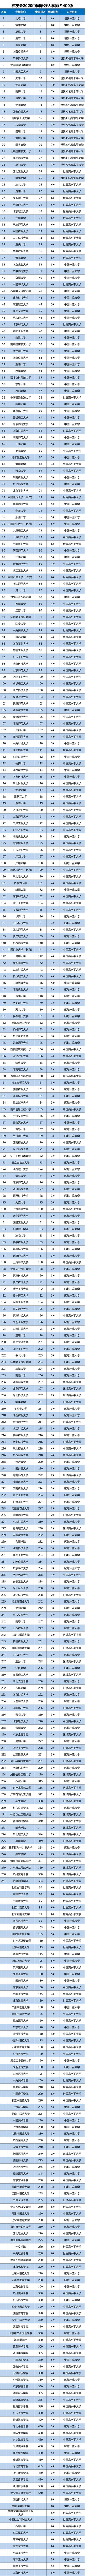 天津各大学排名2020_2021中国最好大学排名新鲜公布,天津大学挺进前10强